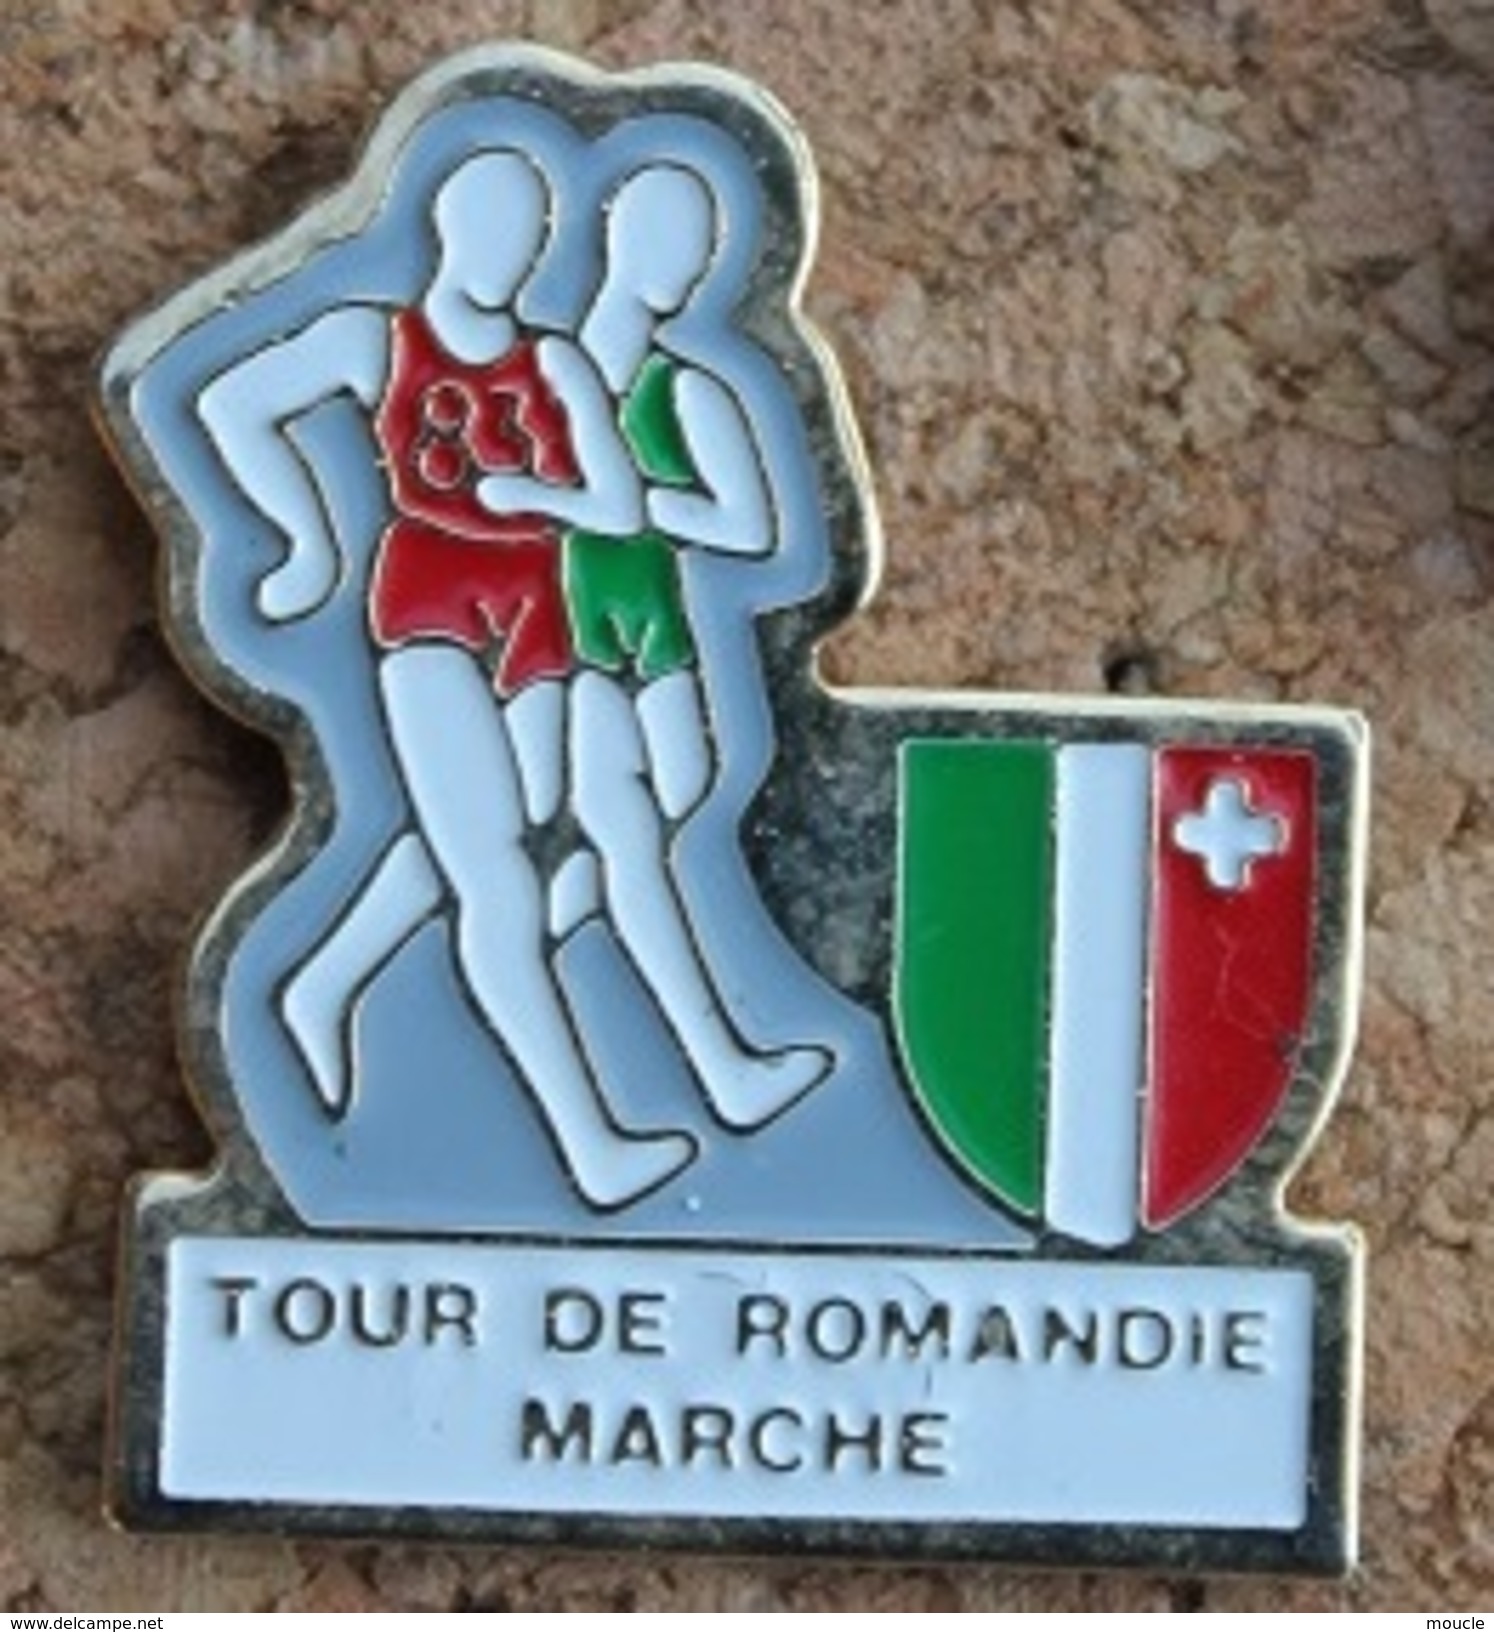 TOUR DE ROMANDIE A LA MARCHE - SUISSE - ETAPE DU CANTON DE NEUCHÂTEL - MARCHEURS - SCHWEIZ - SVIZZERA - SUIZA  -  (13) - Leichtathletik